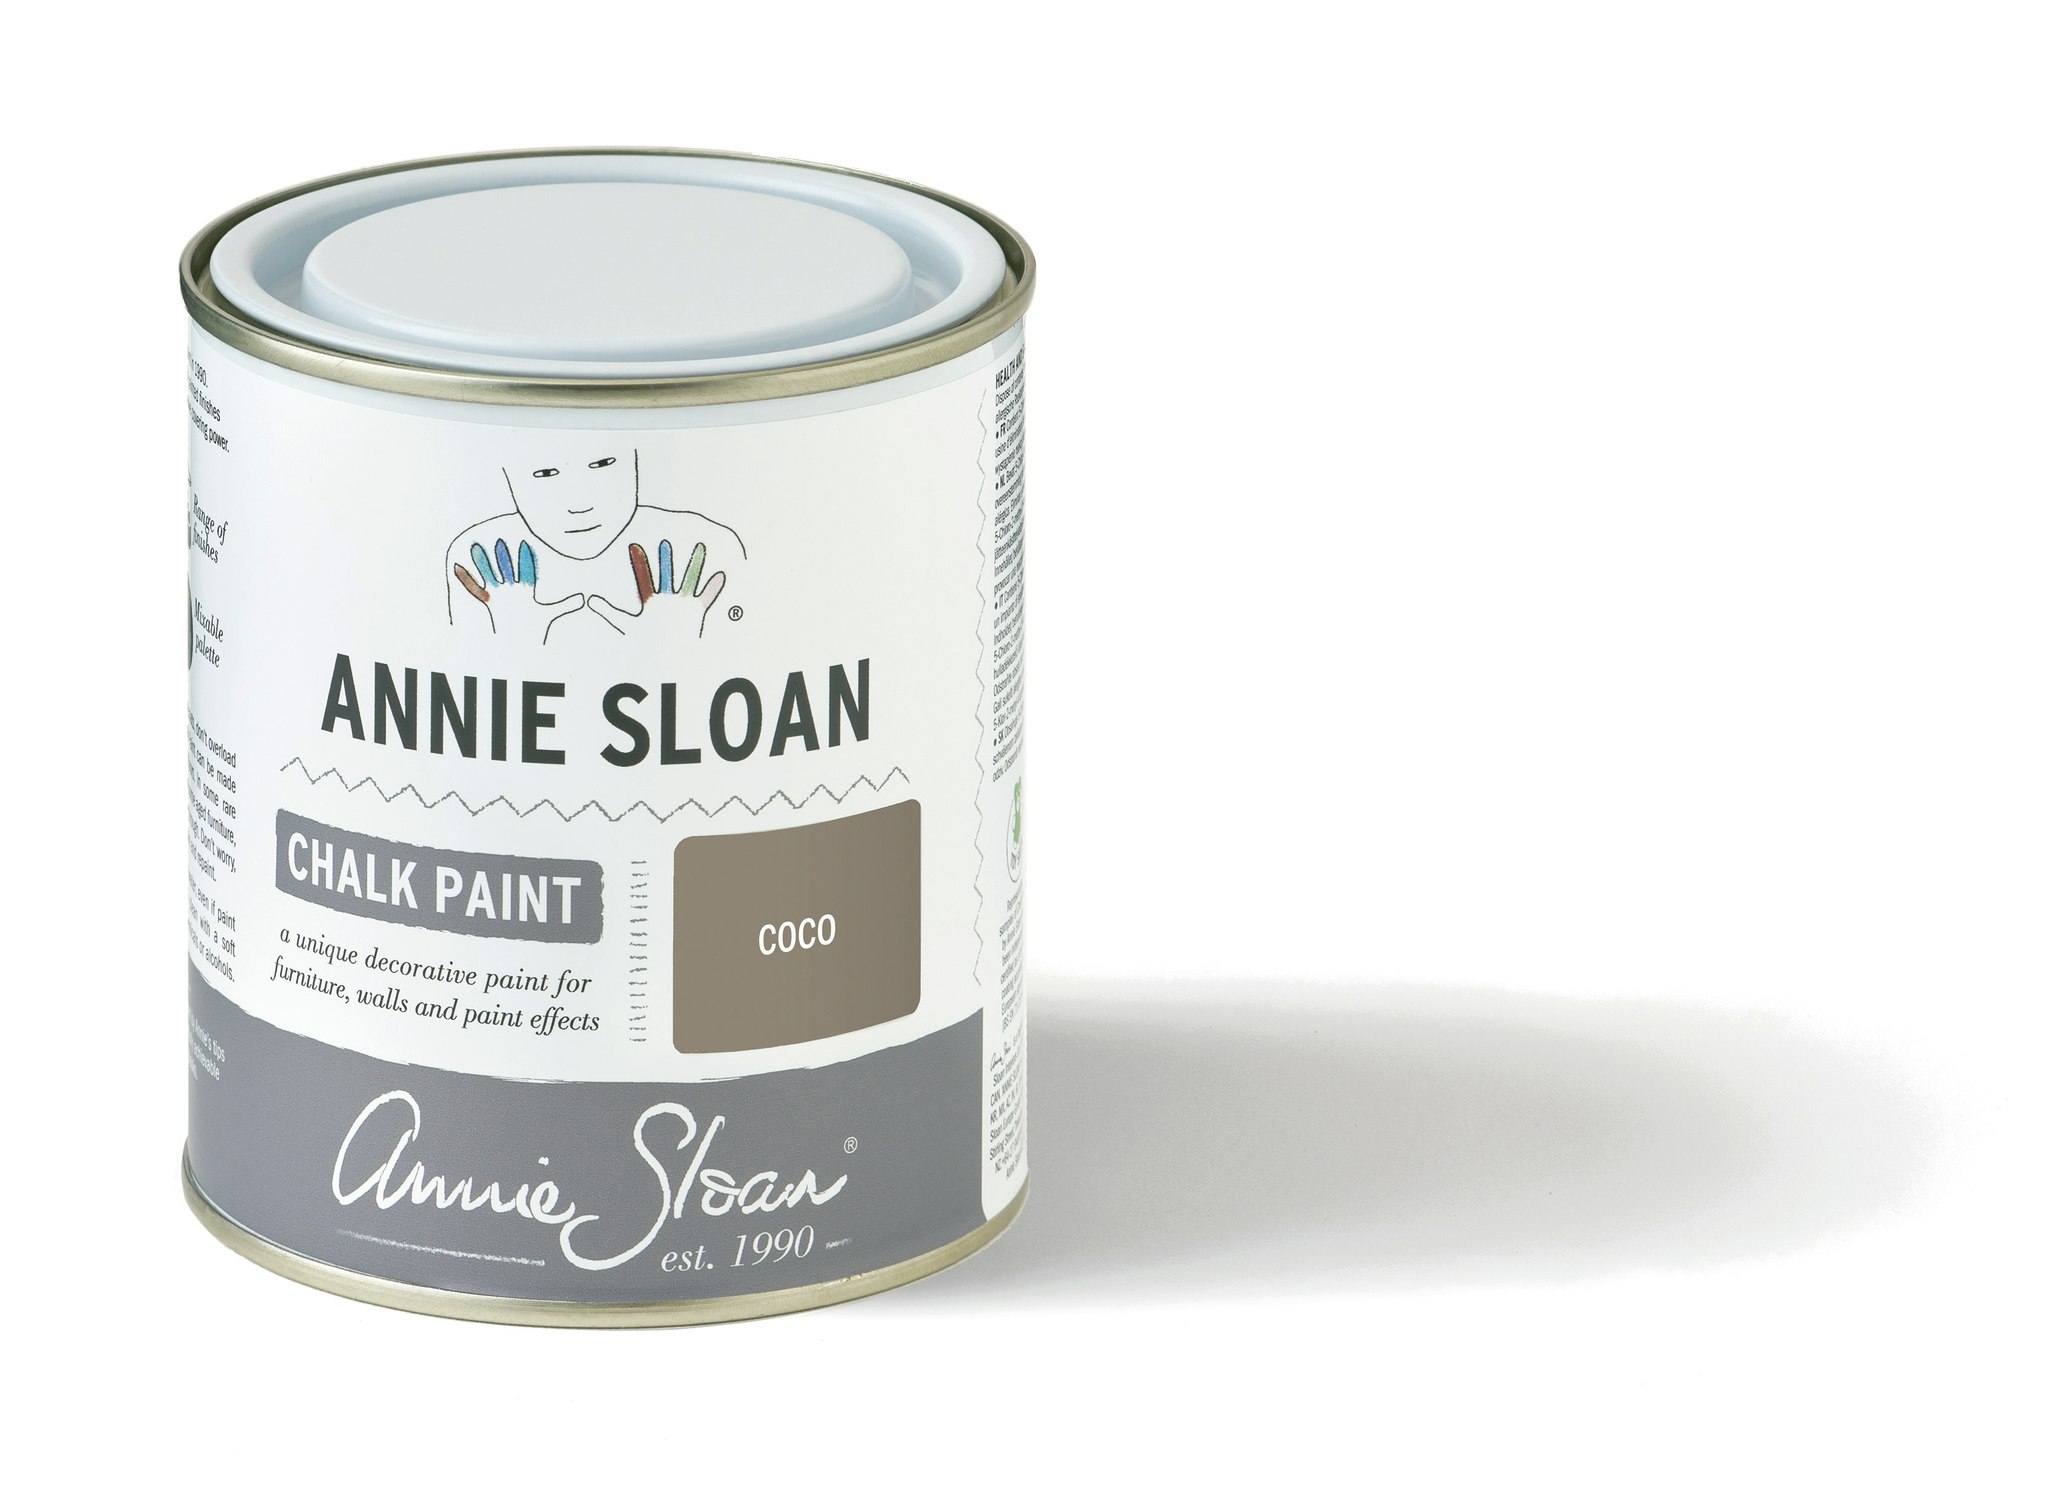 Annie Sloan Chalk paint Coco Glada ungmöns diversehandel